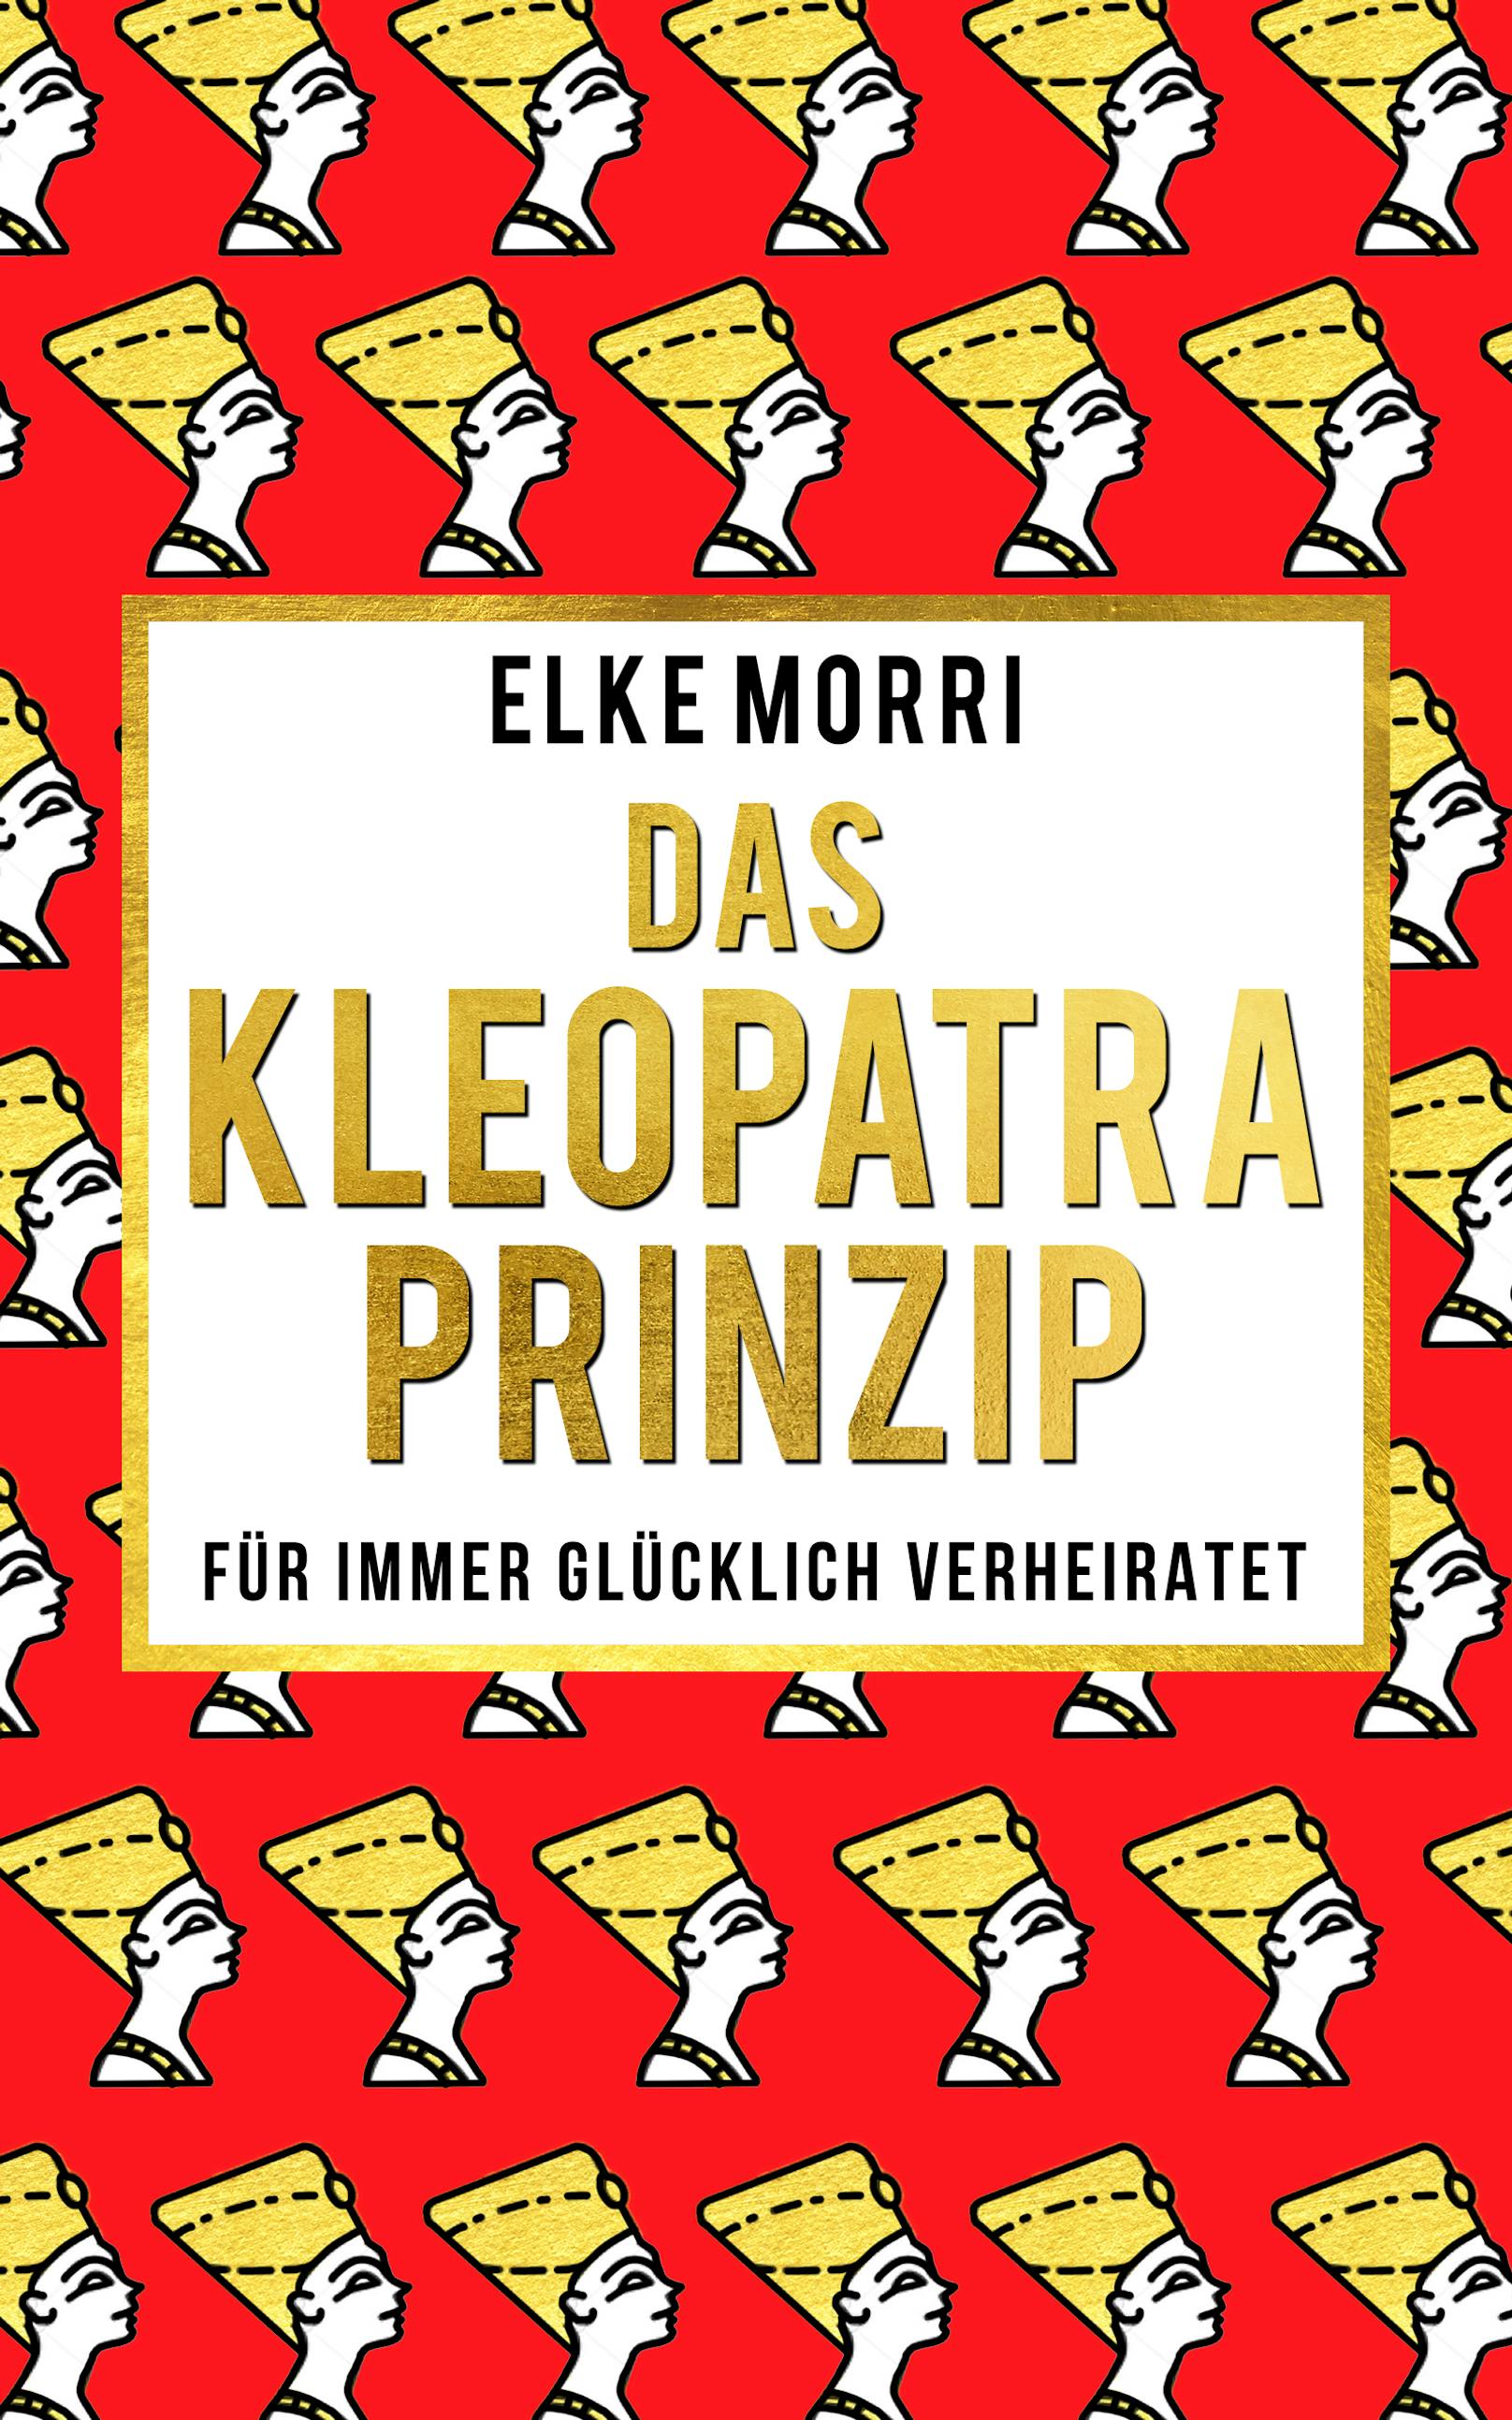 "Das Kleopatra-Prinzip - Für immer glücklich verheiratet" von Elke Morri, erhältlich um 9,99 Euro unter <a href="http://www.elkemorri.com/" target="_blank">www.elkemorri.com</a>.